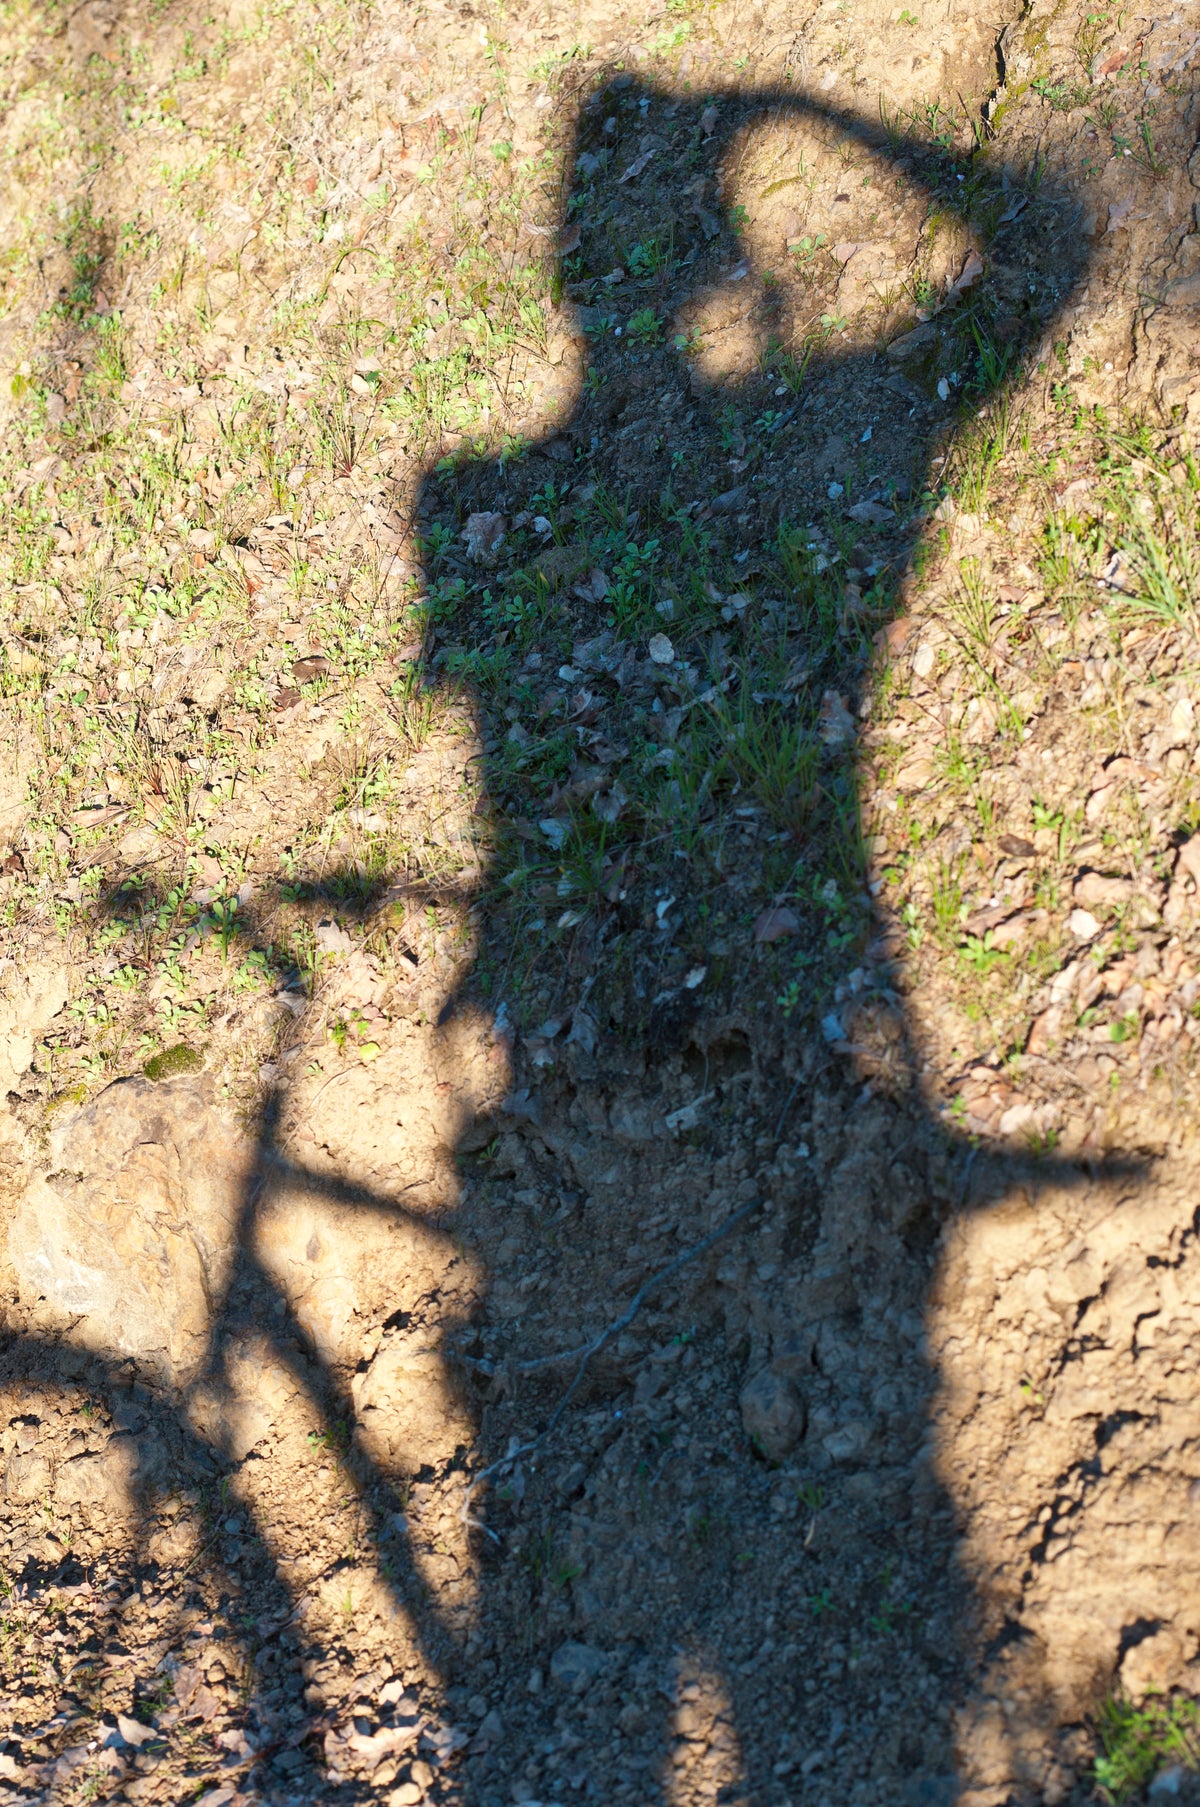 &lt;I&gt;À Vélo - auto portrait (Self-Portrait with Bicycle)&lt;/I&gt;&lt;br&gt;Mendocino, California, 2015&lt;br&gt;&lt;br&gt;GC0397